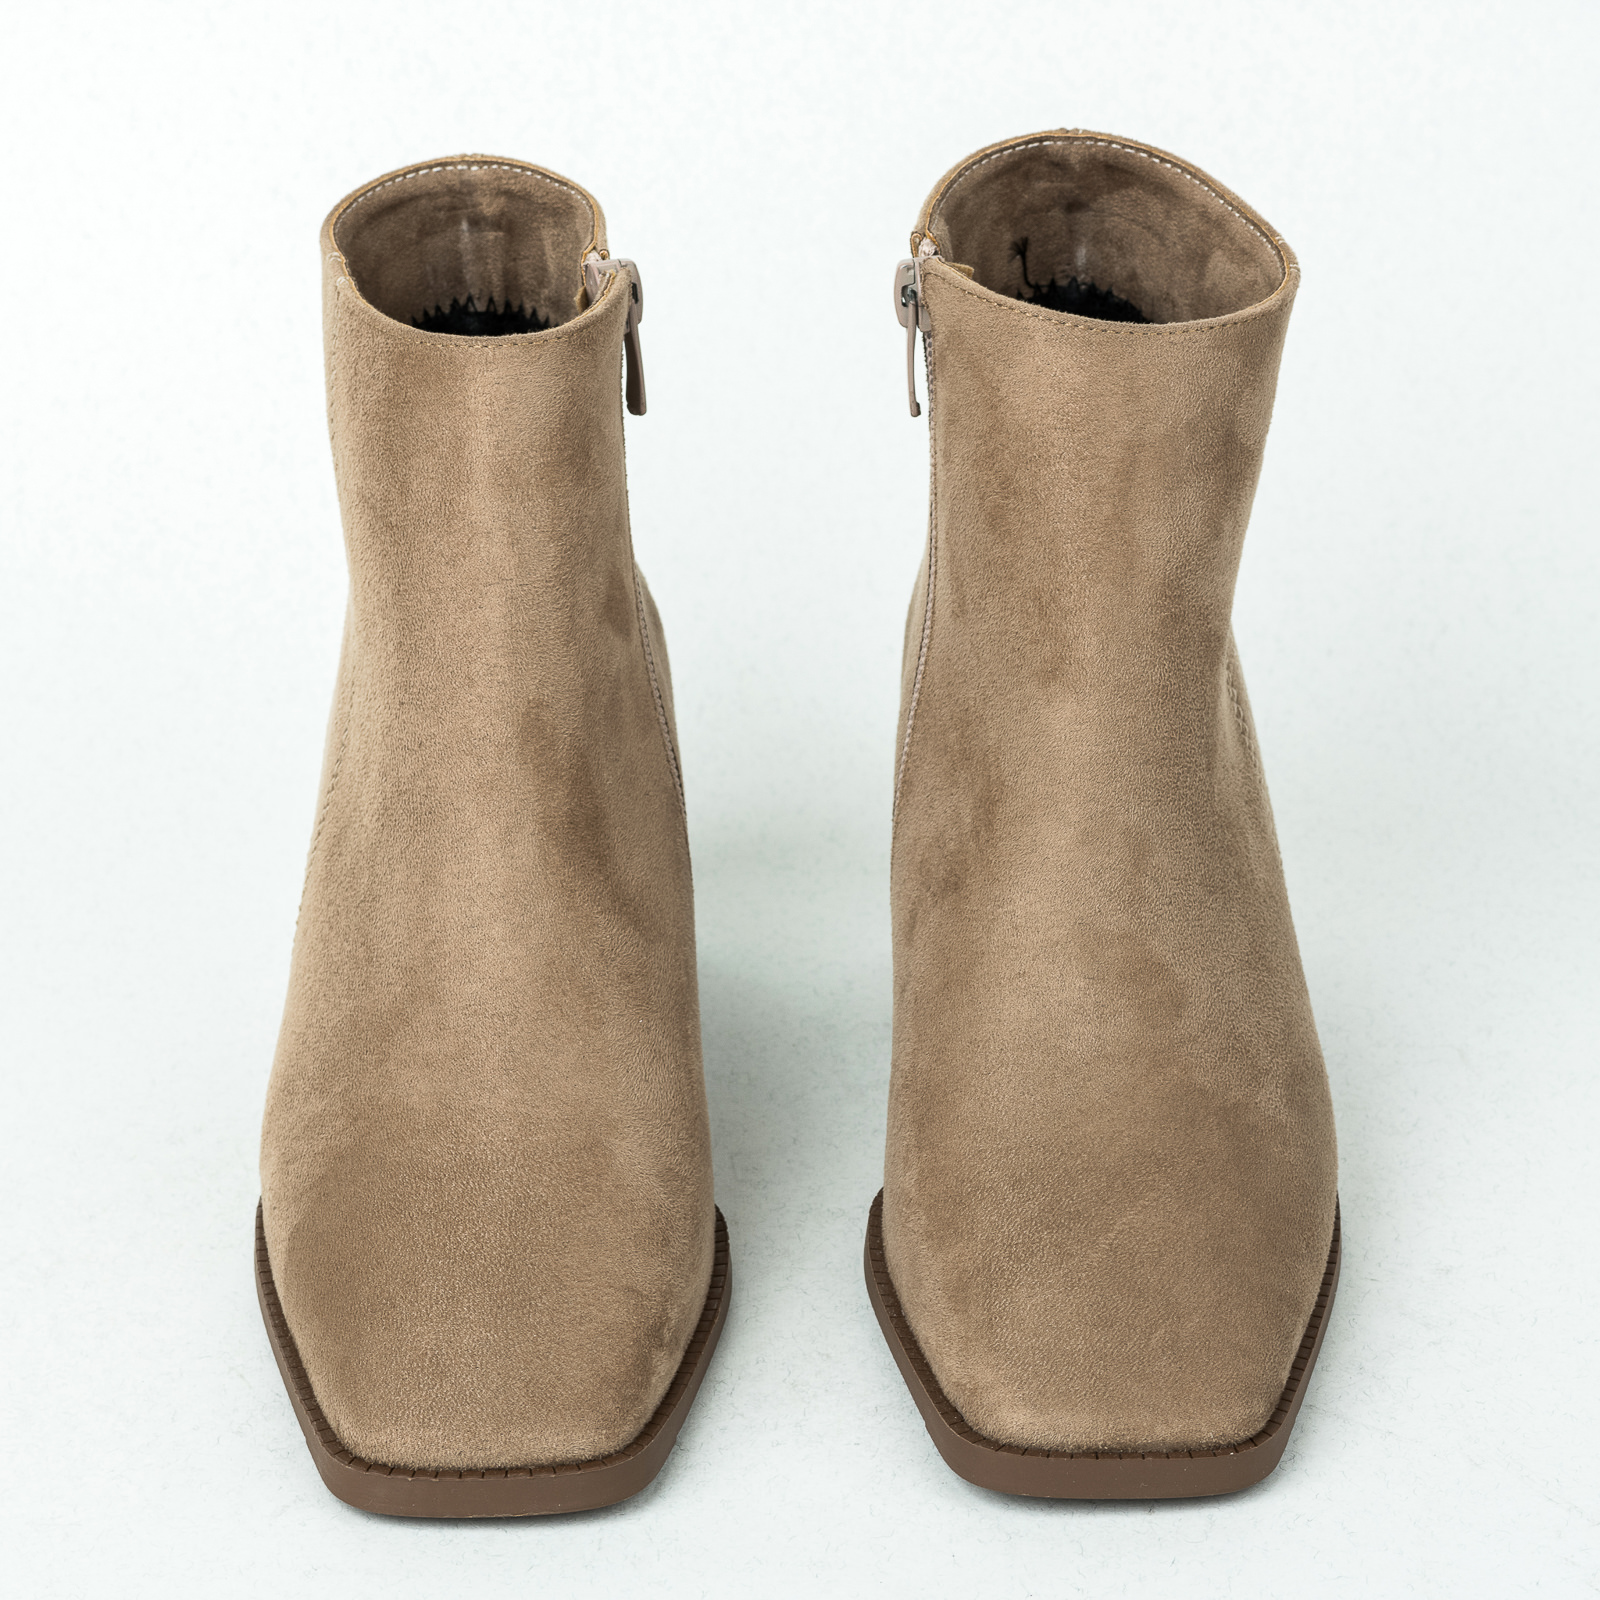 Women ankle boots B230 - BEIGE